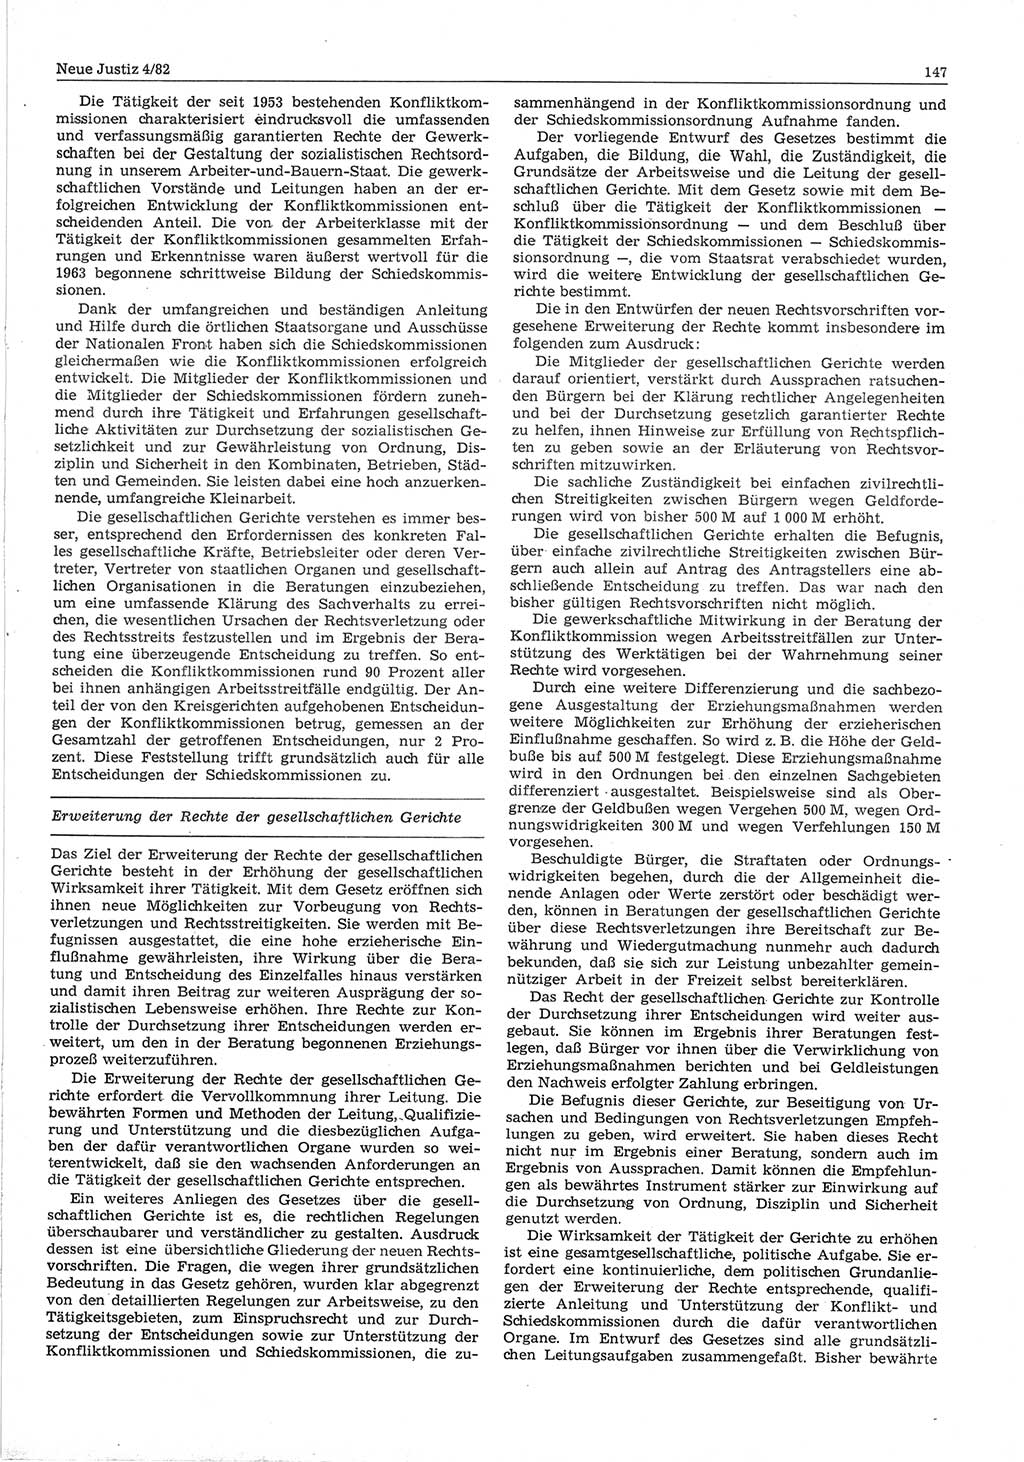 Neue Justiz (NJ), Zeitschrift für sozialistisches Recht und Gesetzlichkeit [Deutsche Demokratische Republik (DDR)], 36. Jahrgang 1982, Seite 147 (NJ DDR 1982, S. 147)